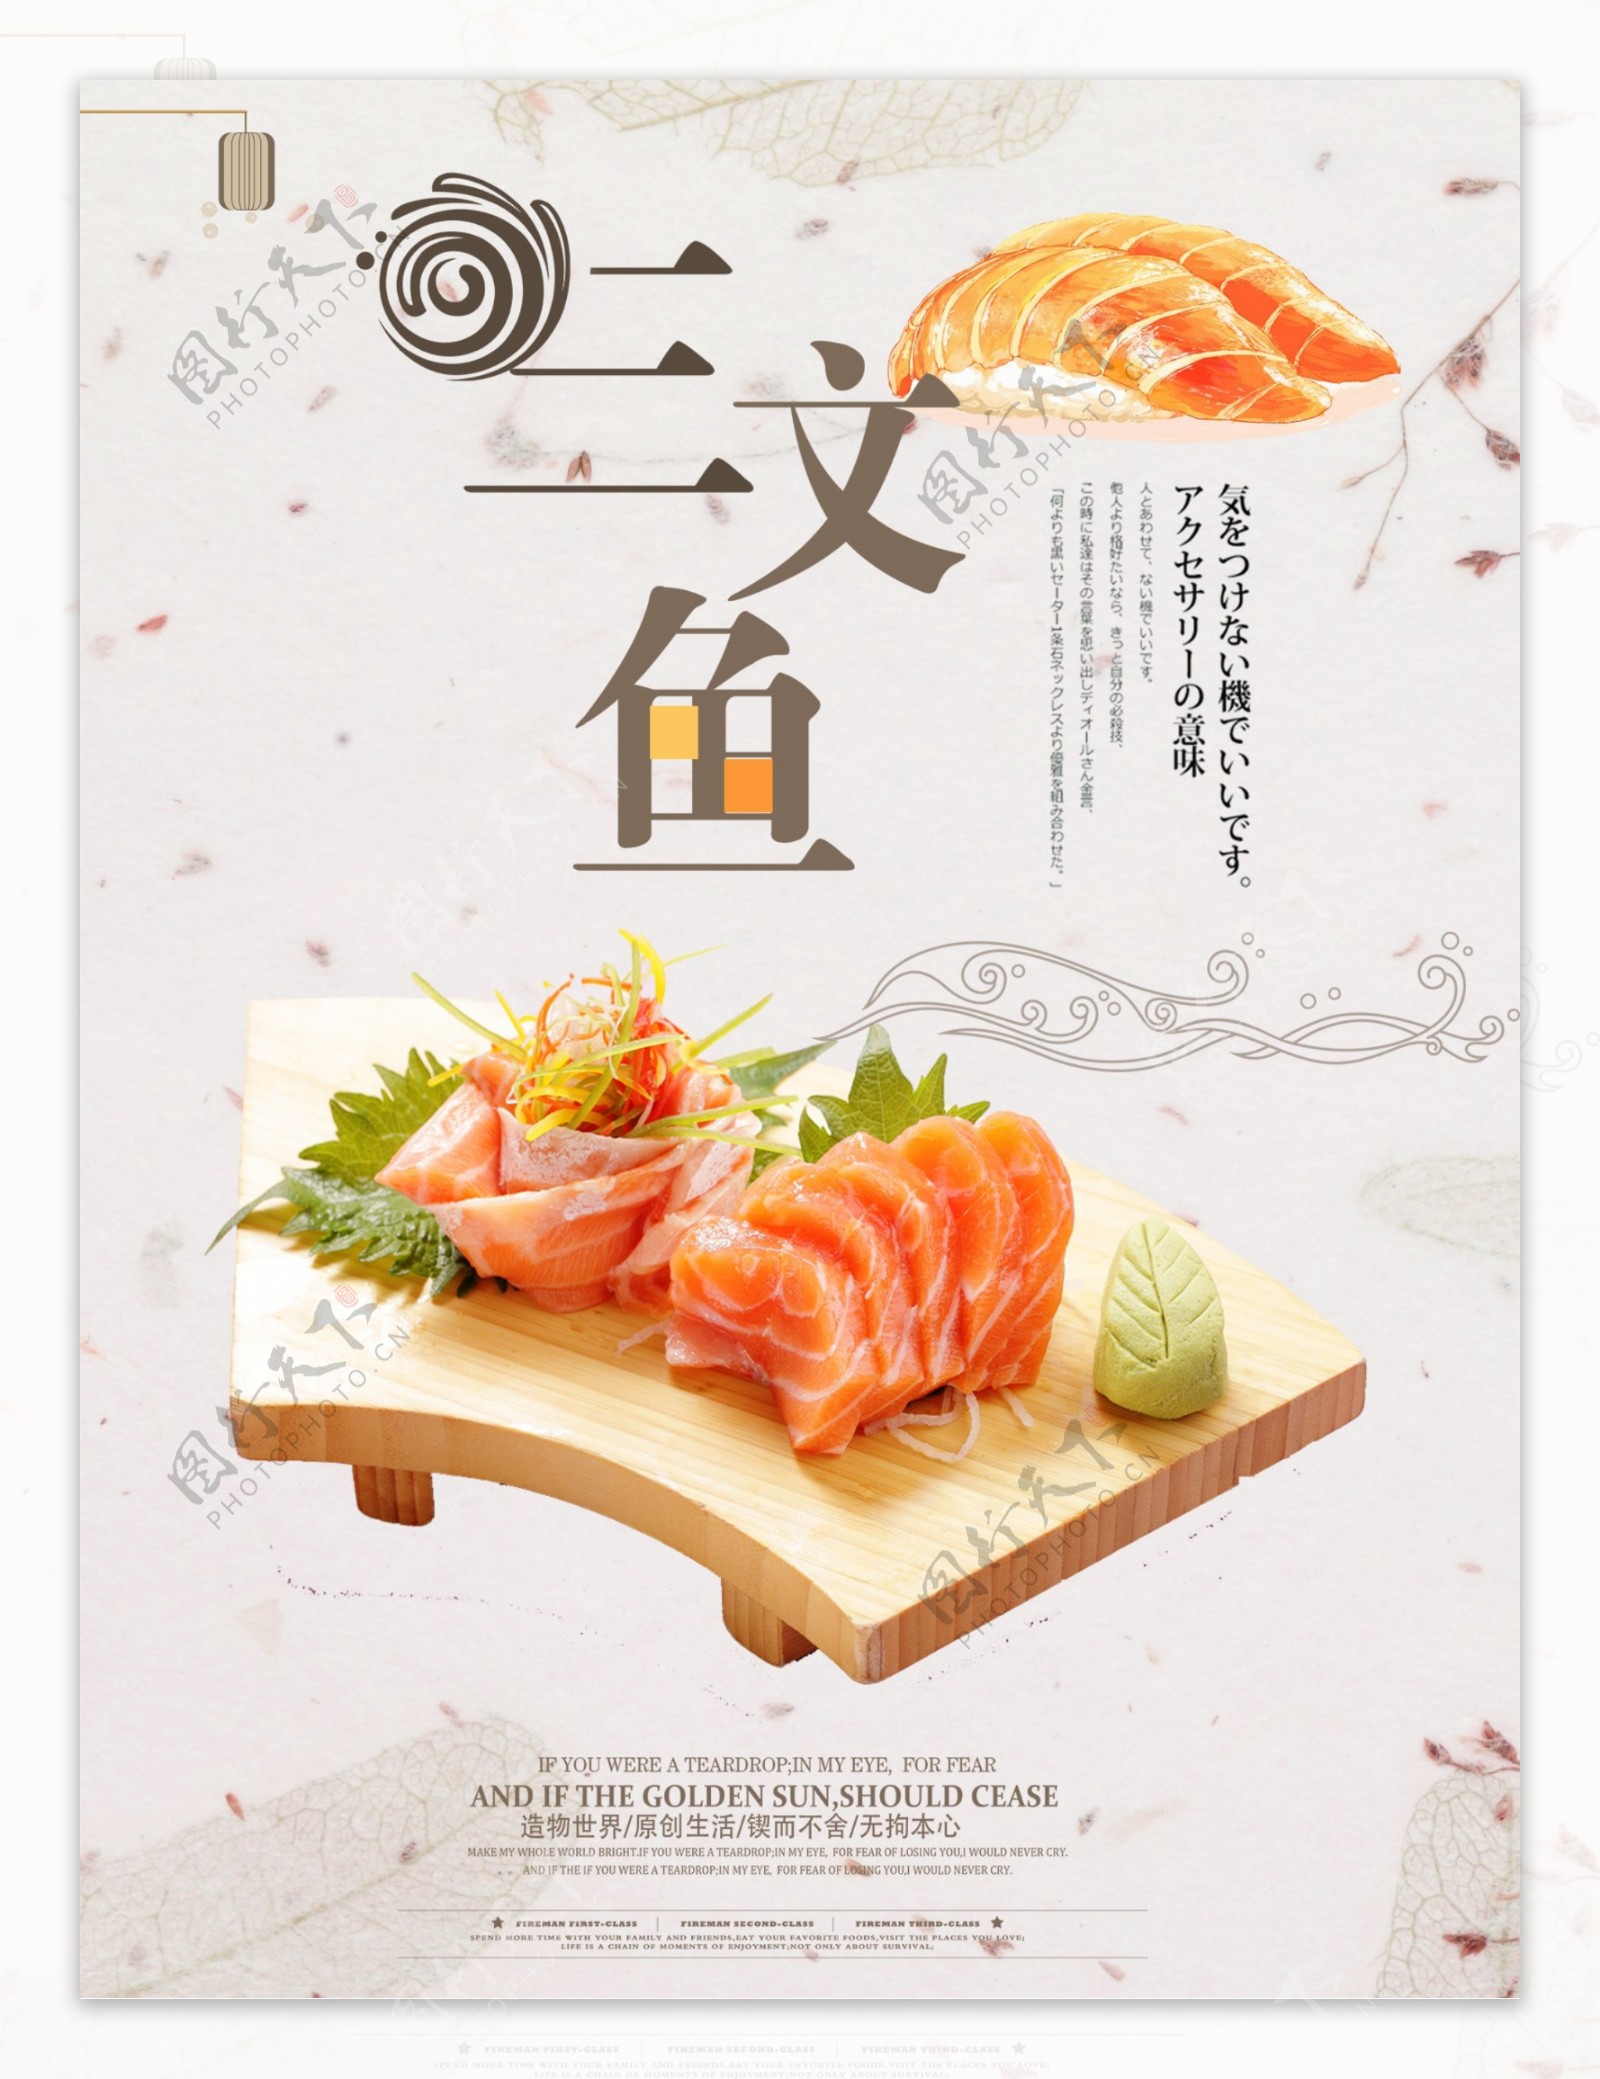 三文鱼料理餐饮店美食促销海报设